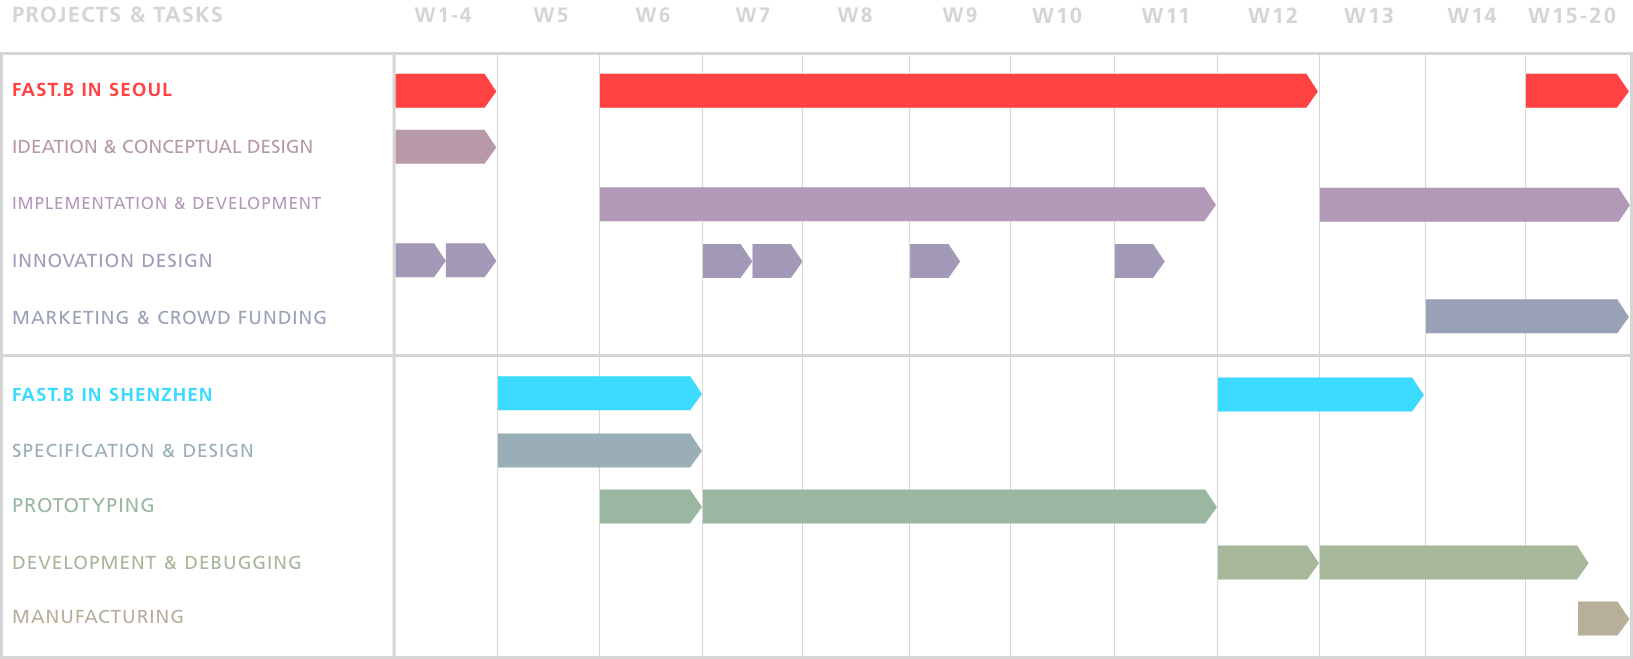 Program Timeline